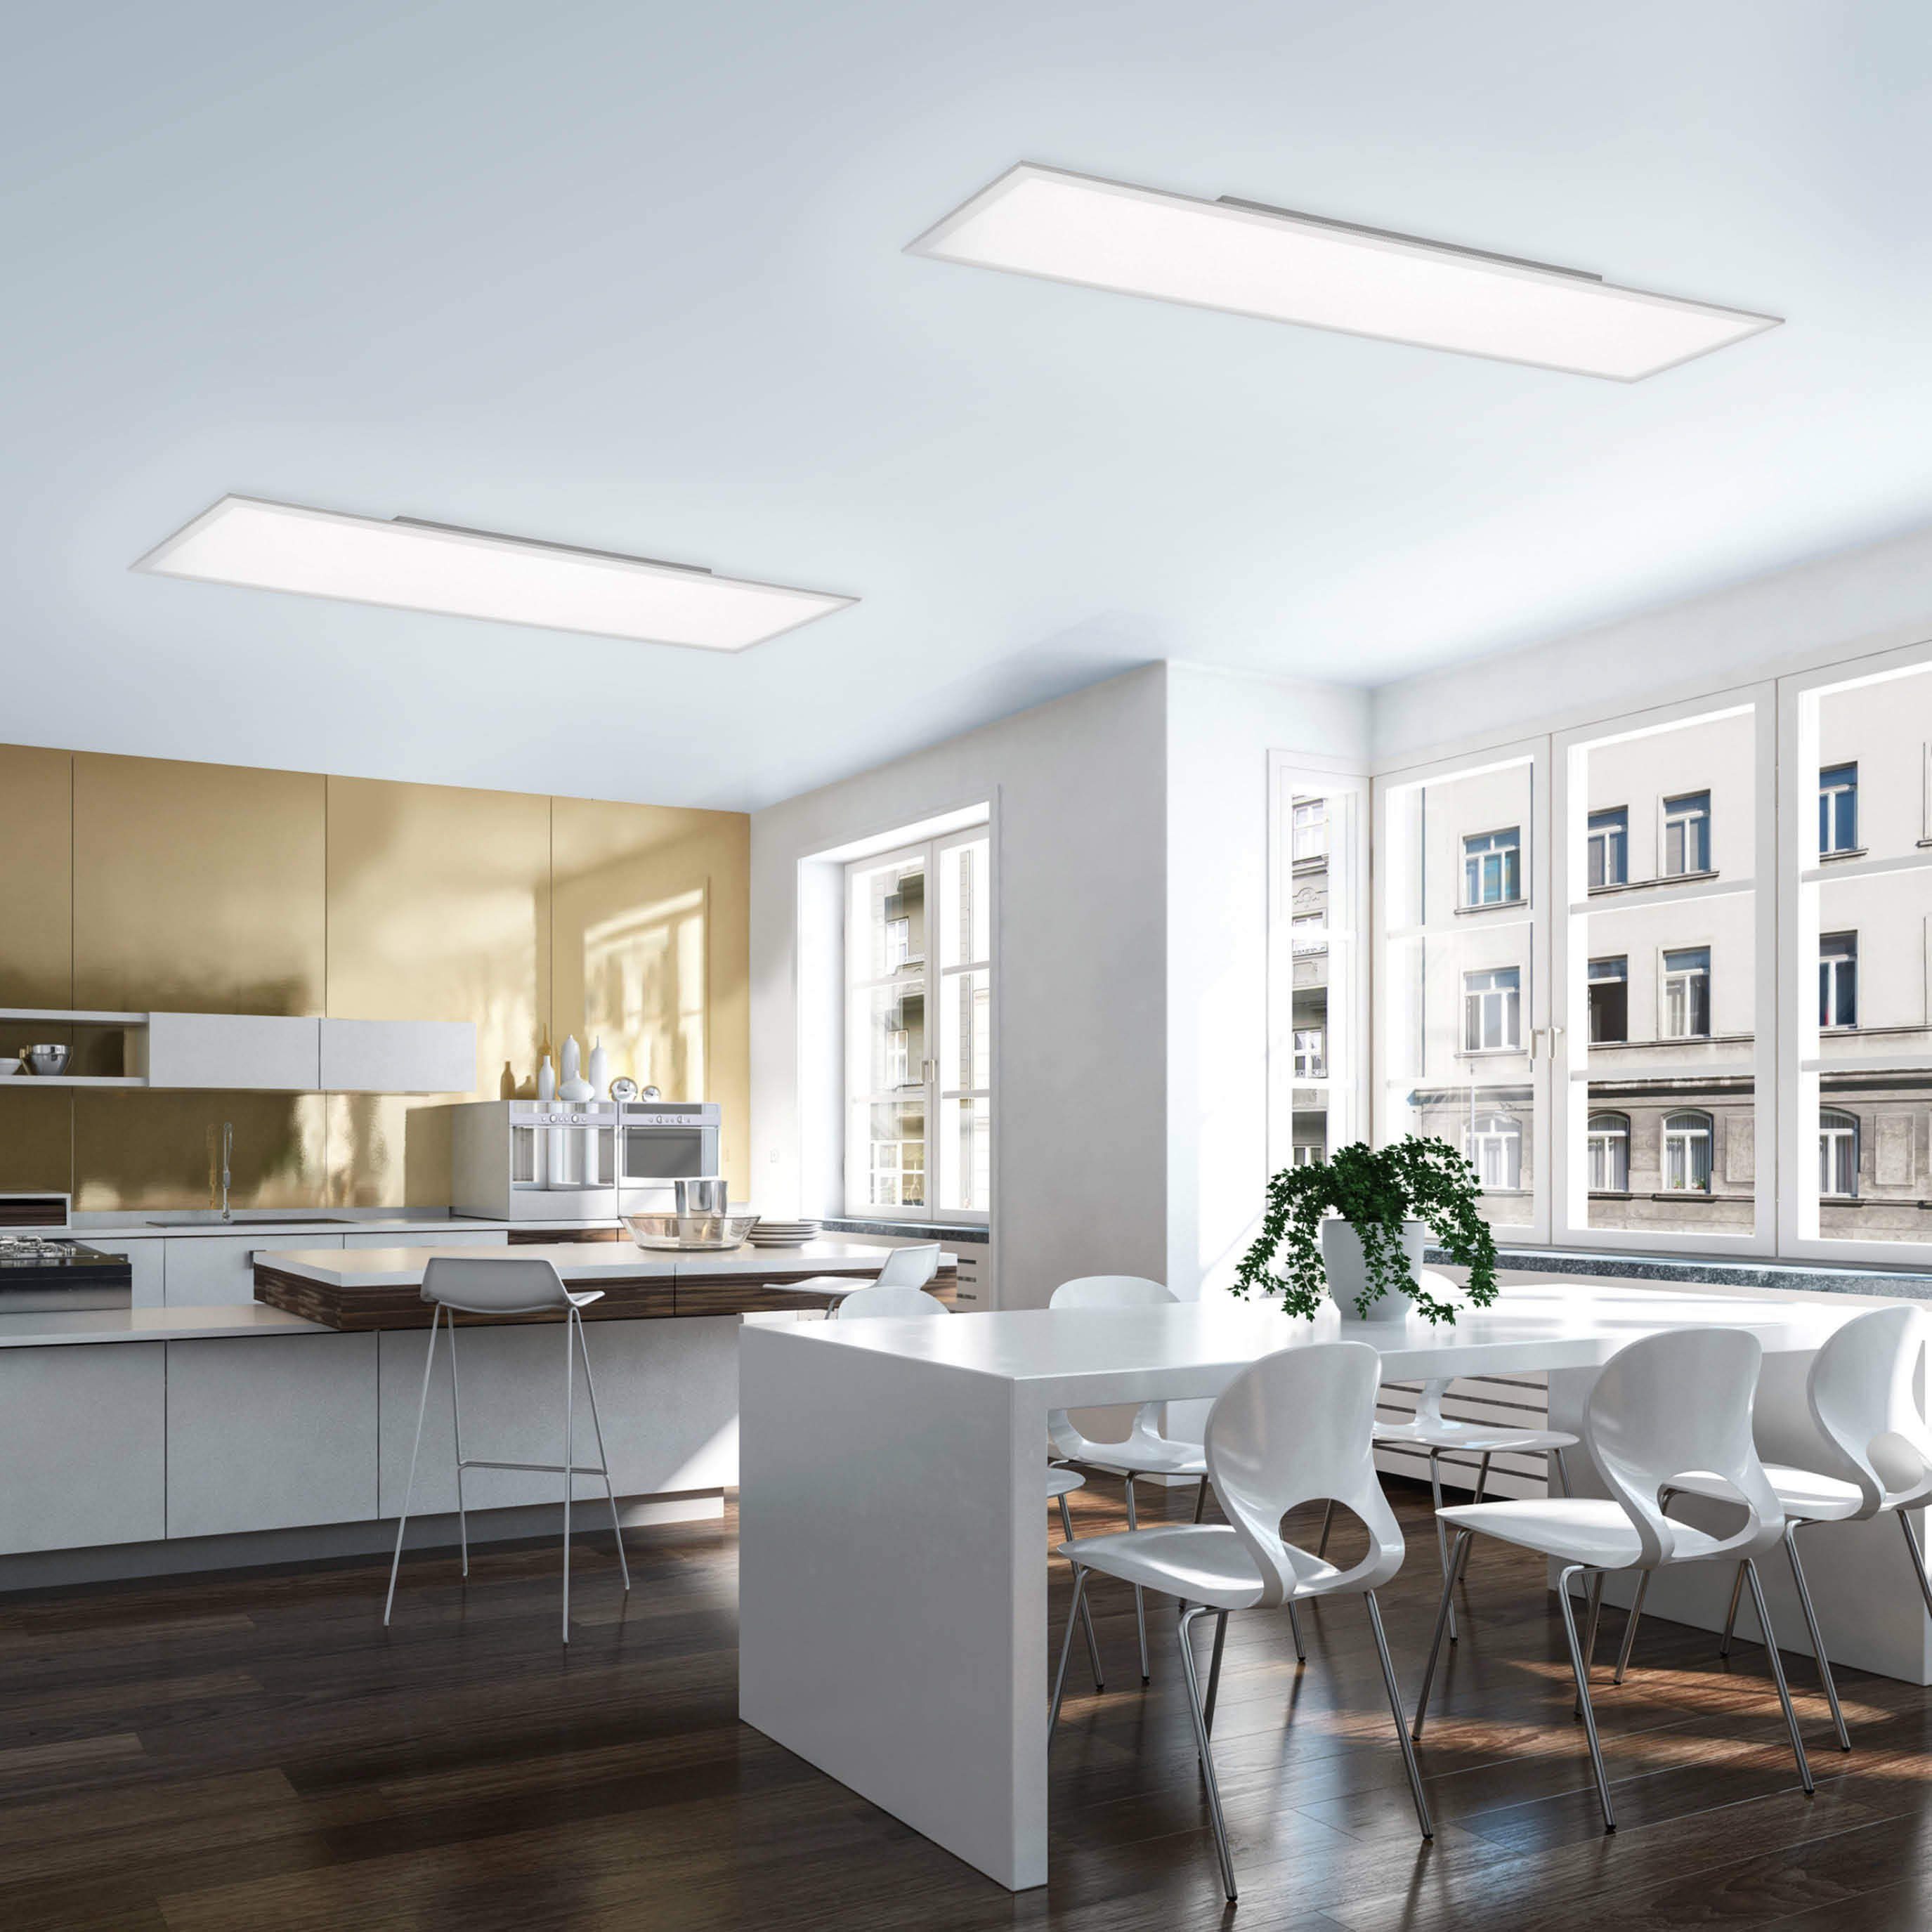 SellTec LED-Leuchte Büro Leuchtmittel, LED Panel Smarte per tageslichtweiß, Deckenlampe Fernbedienung, mit dimmbar, 120x30cm, dimmbar